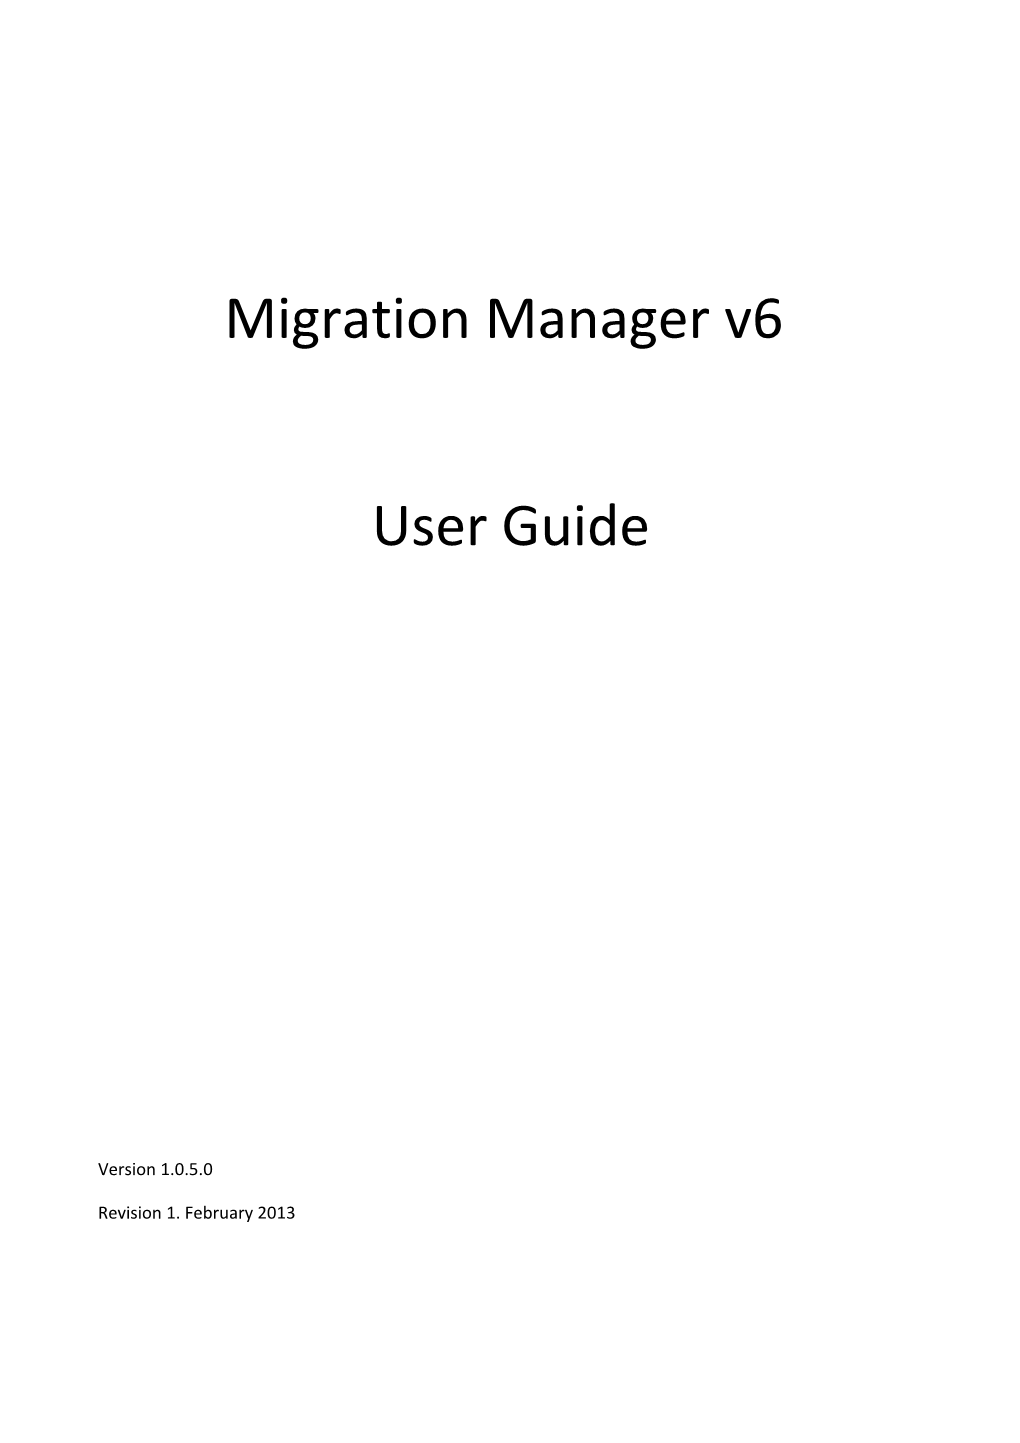 Migration Manager V6